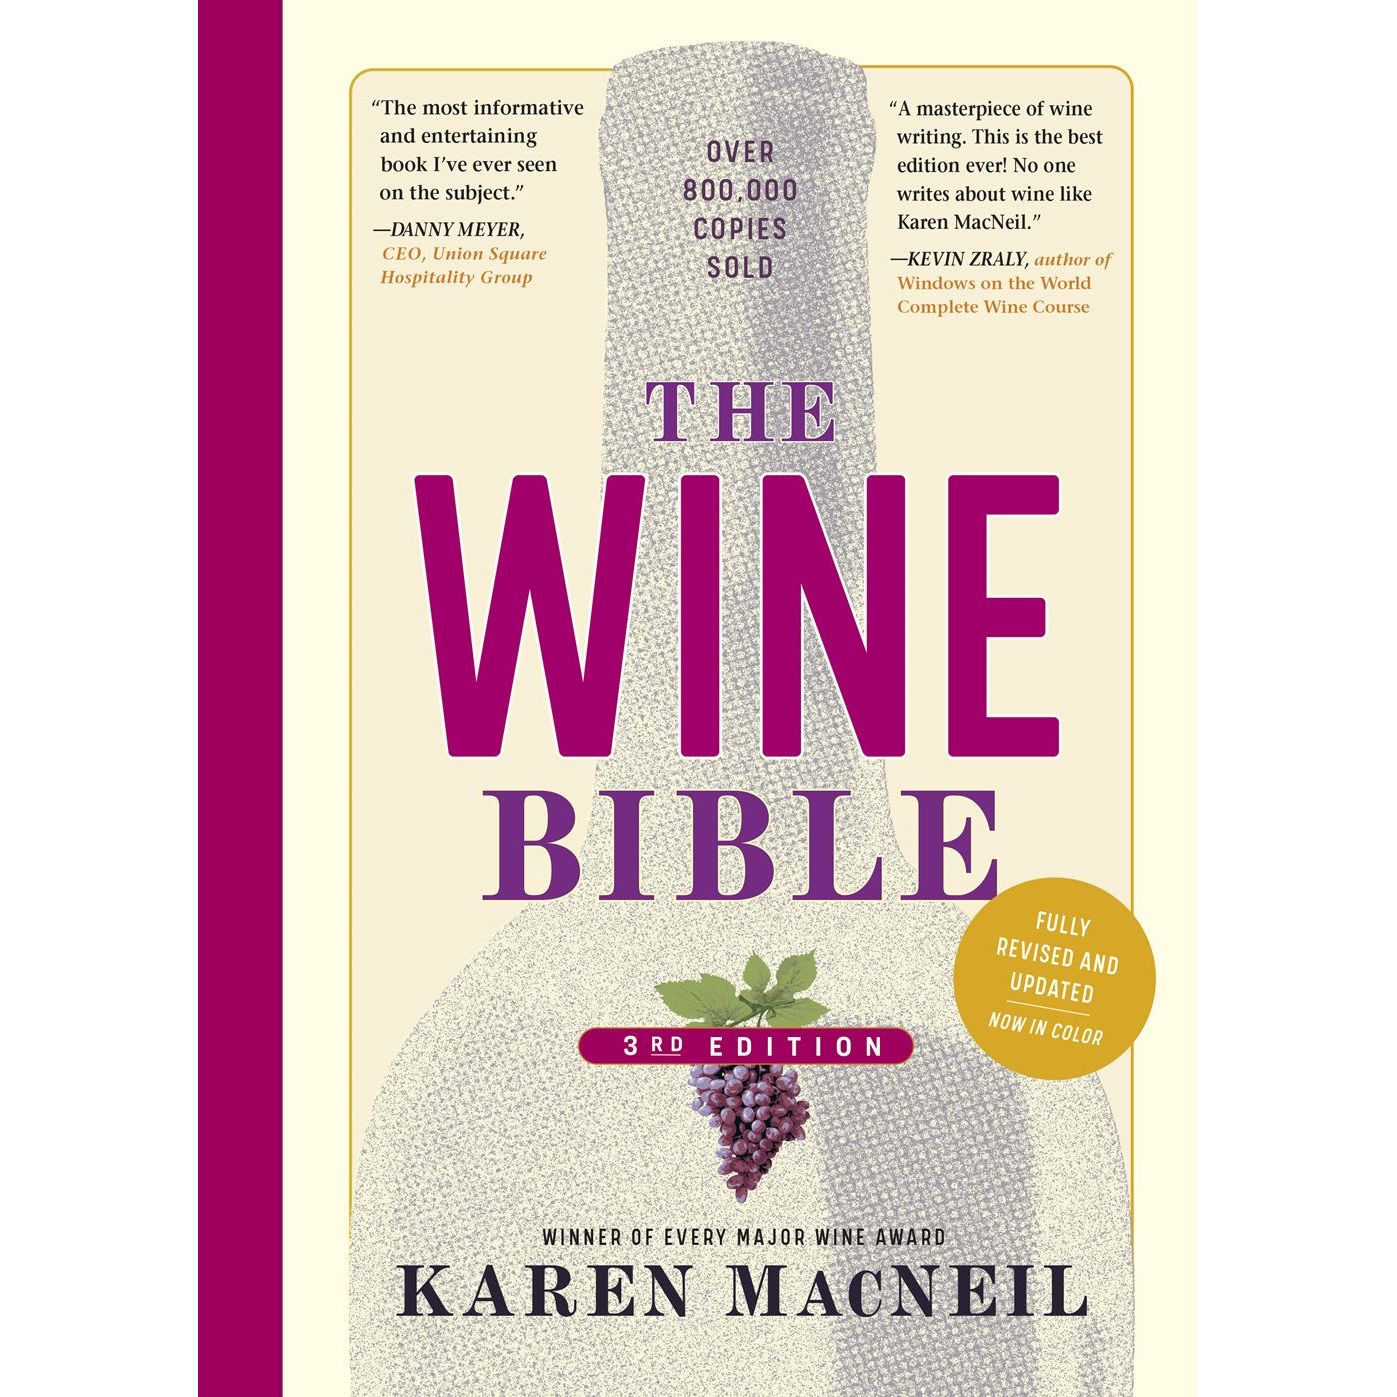 The Wine Bible: 3rd Edition (Karen MacNeil)